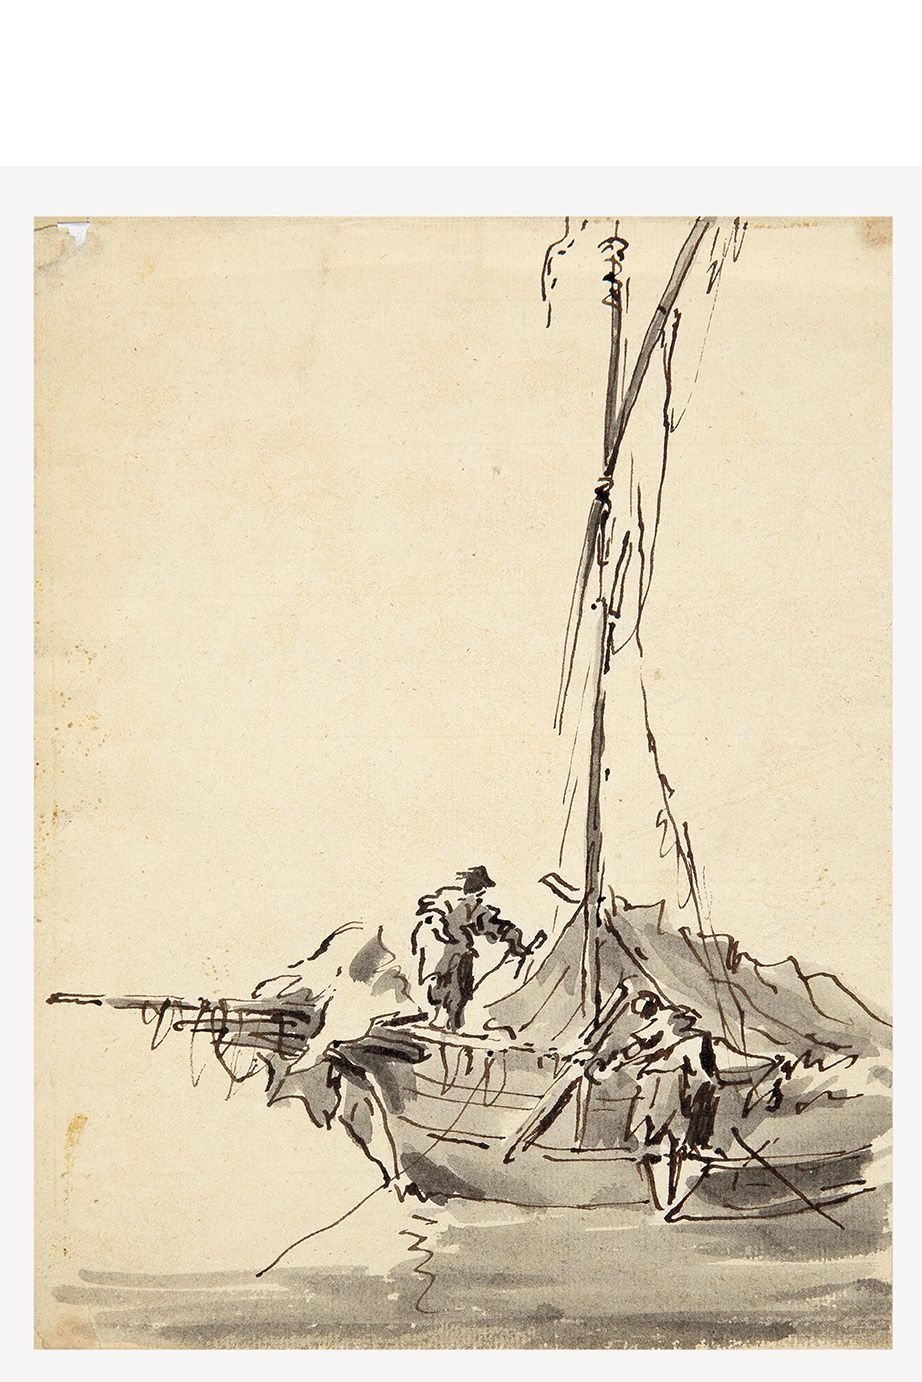 École vénitienne du XVIIIe siècle 18 世纪威尼斯画派
弗朗切斯科-瓜尔迪的追随者
船上的渔民
纸上钢笔、黑墨水和灰水彩
30&hellip;